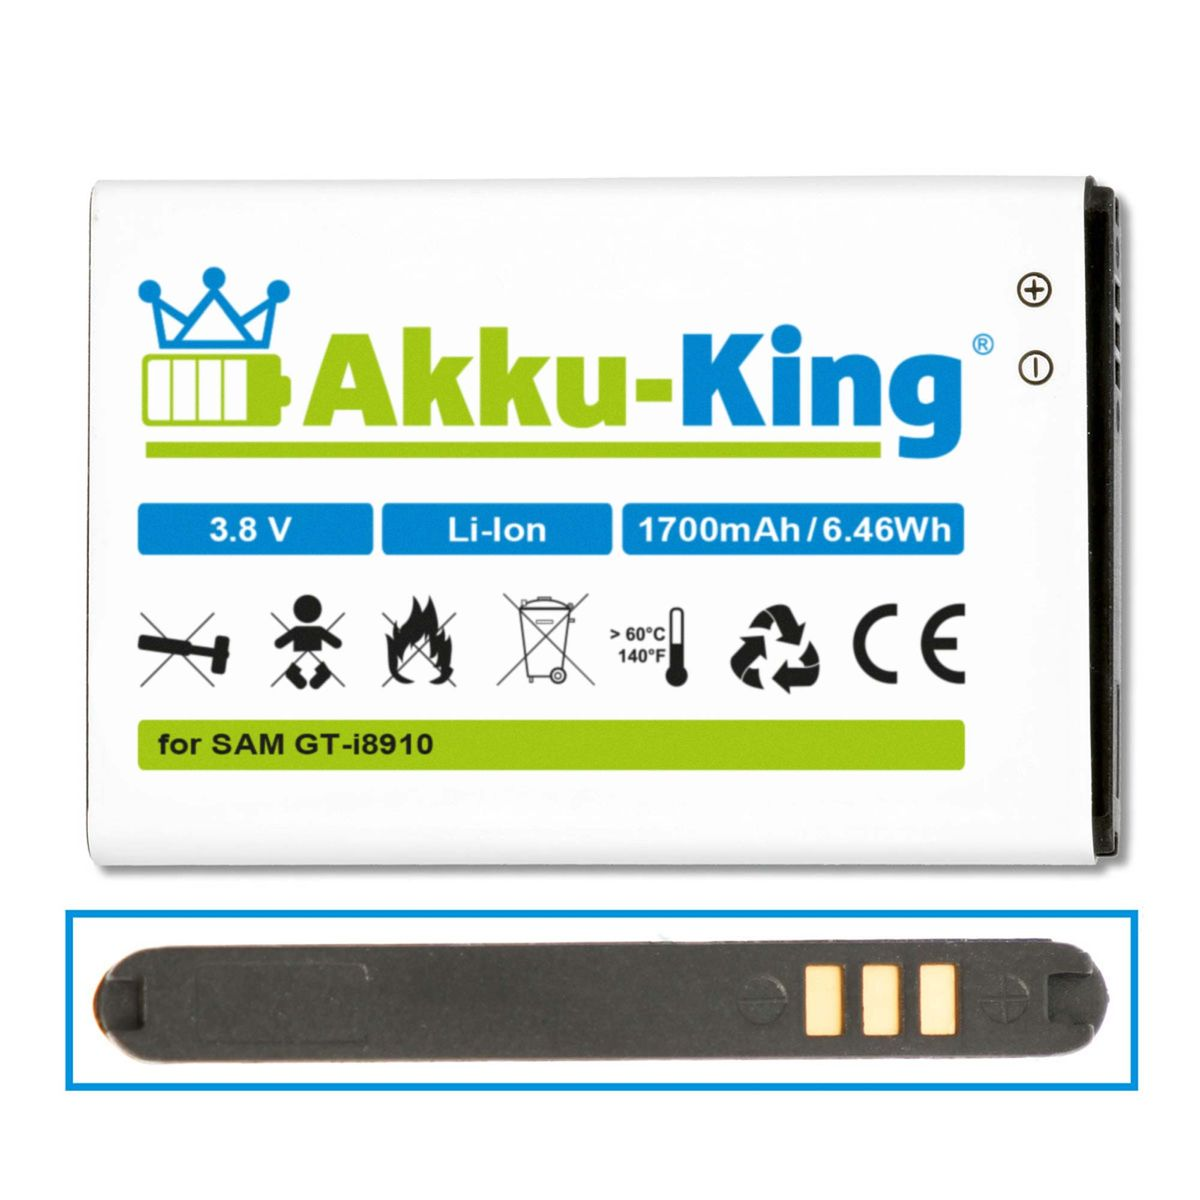 Volt, EB504465VUC Akku Samsung 3.8 mit Handy-Akku, AKKU-KING Li-Ion kompatibel 1700mAh